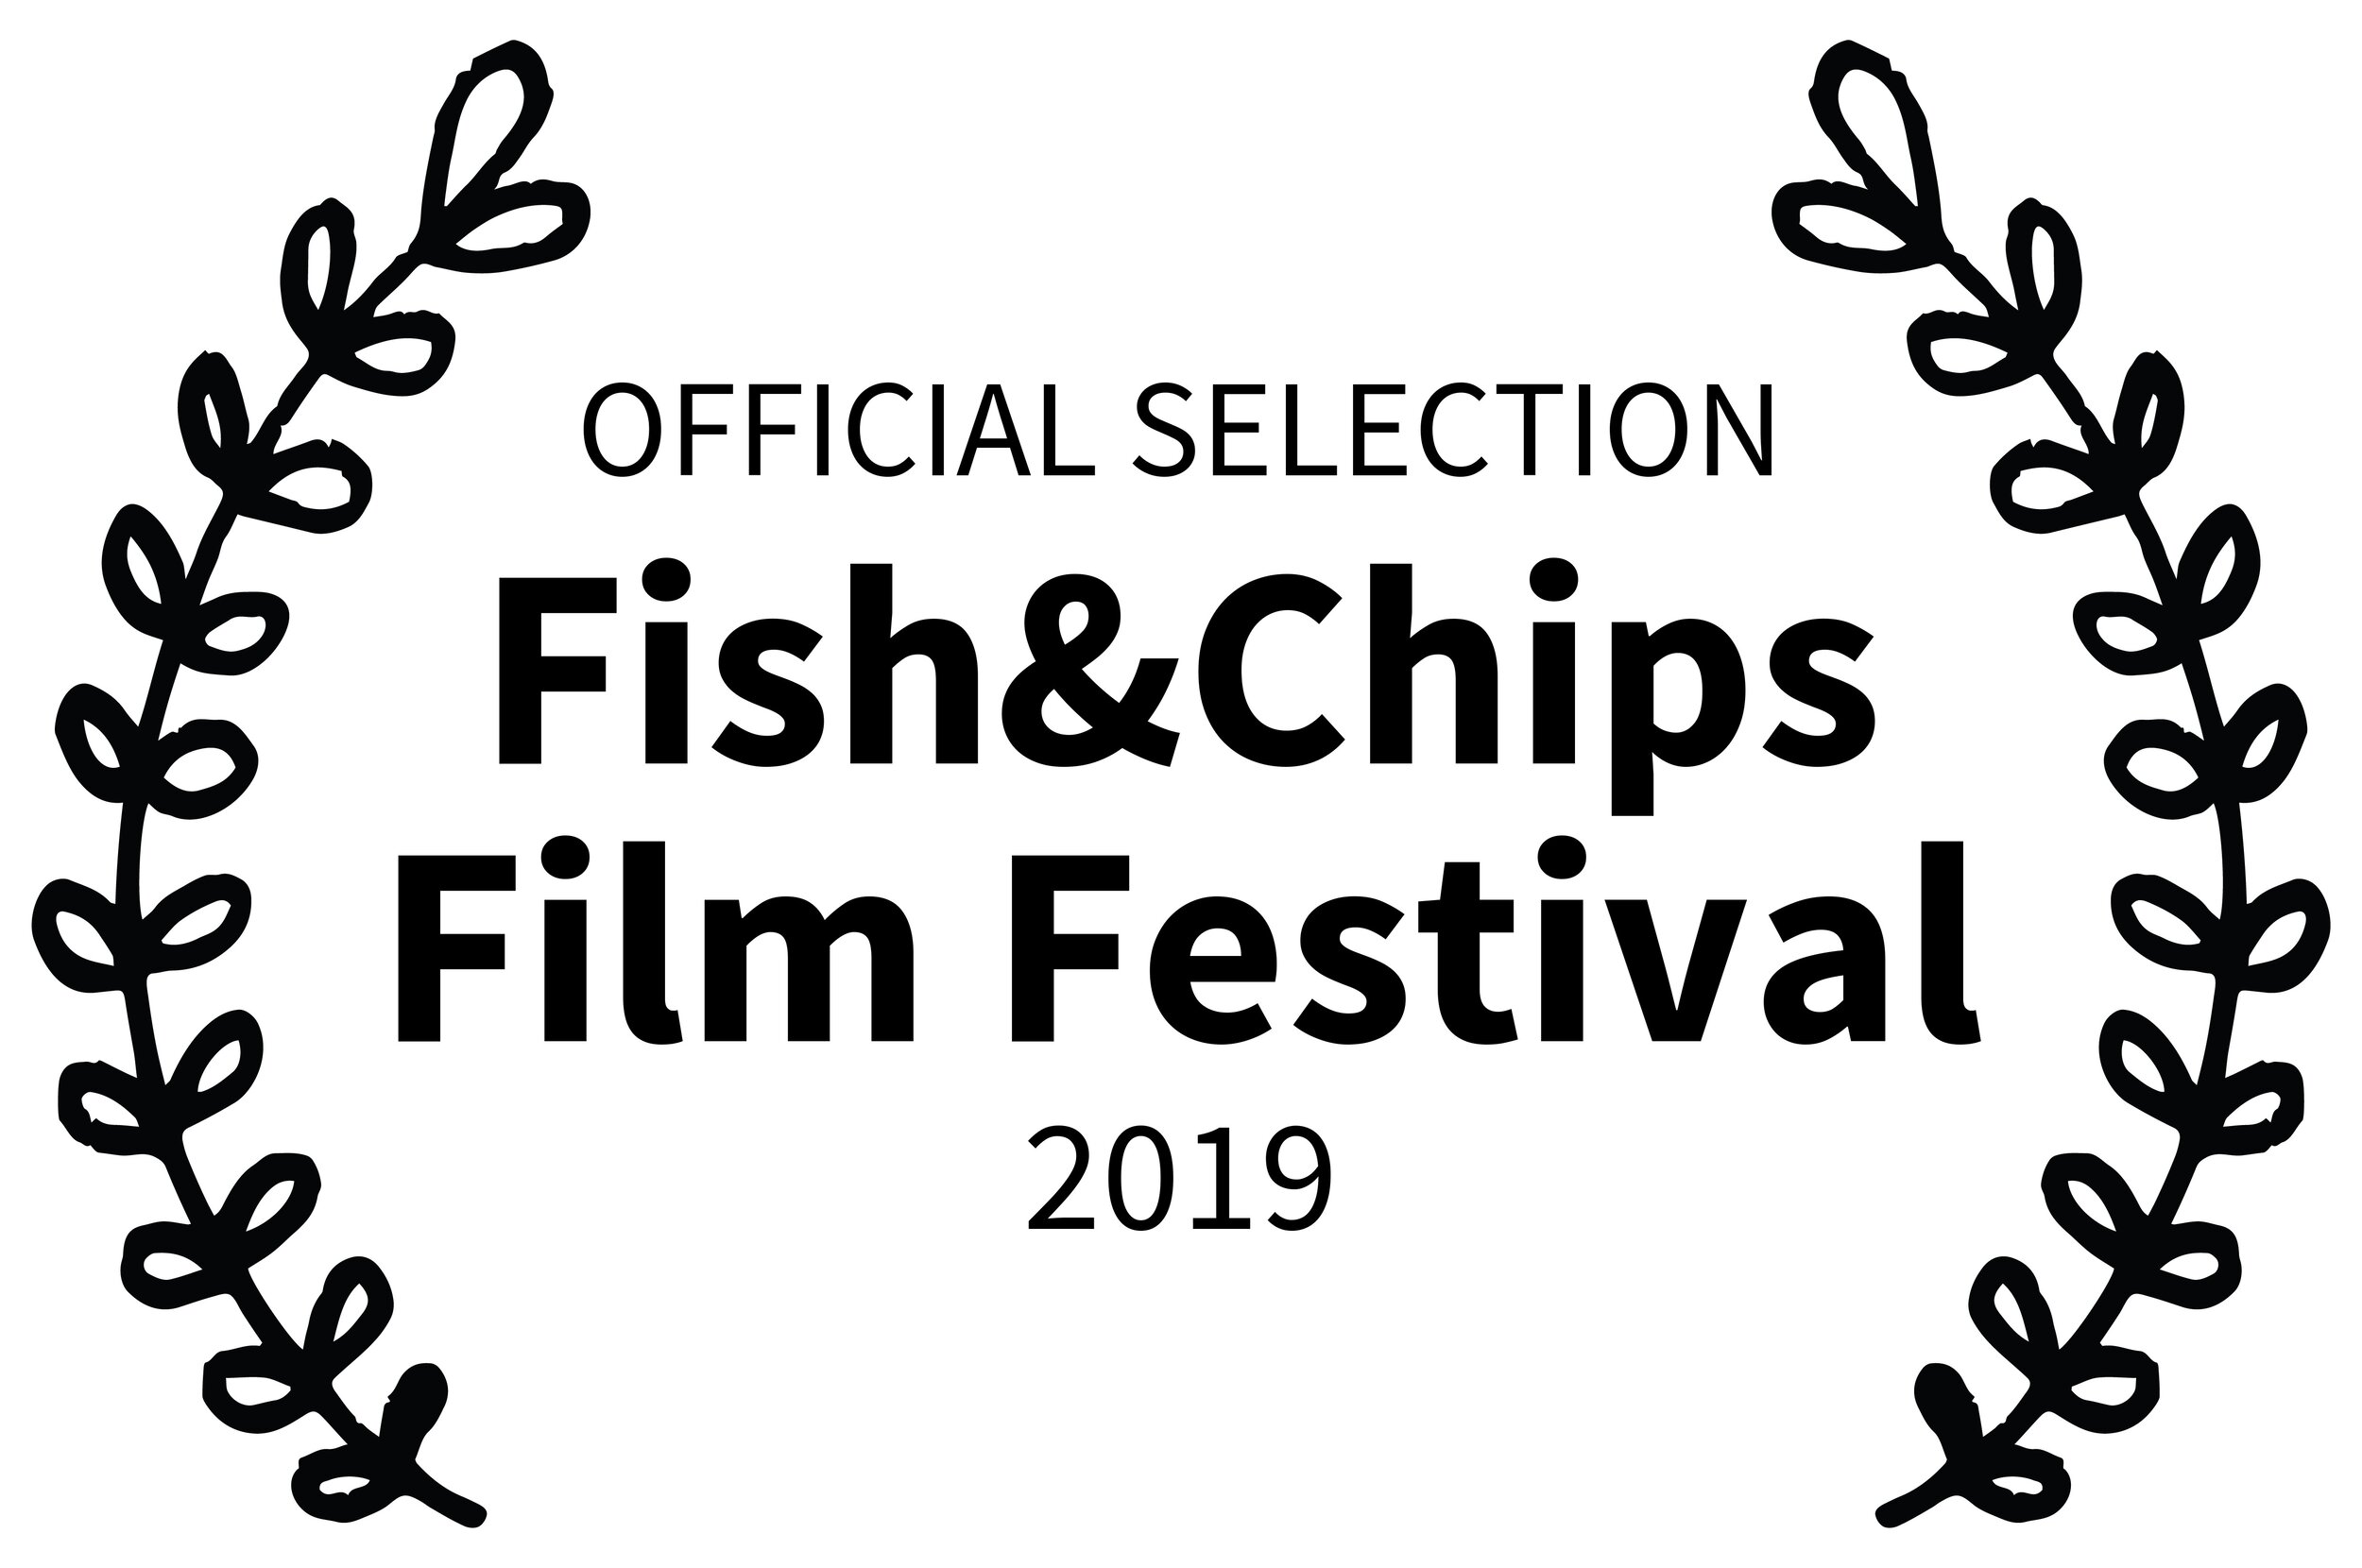 OFFICIALSELECTION-FishChipsFilmFestival-2019 copy.jpg